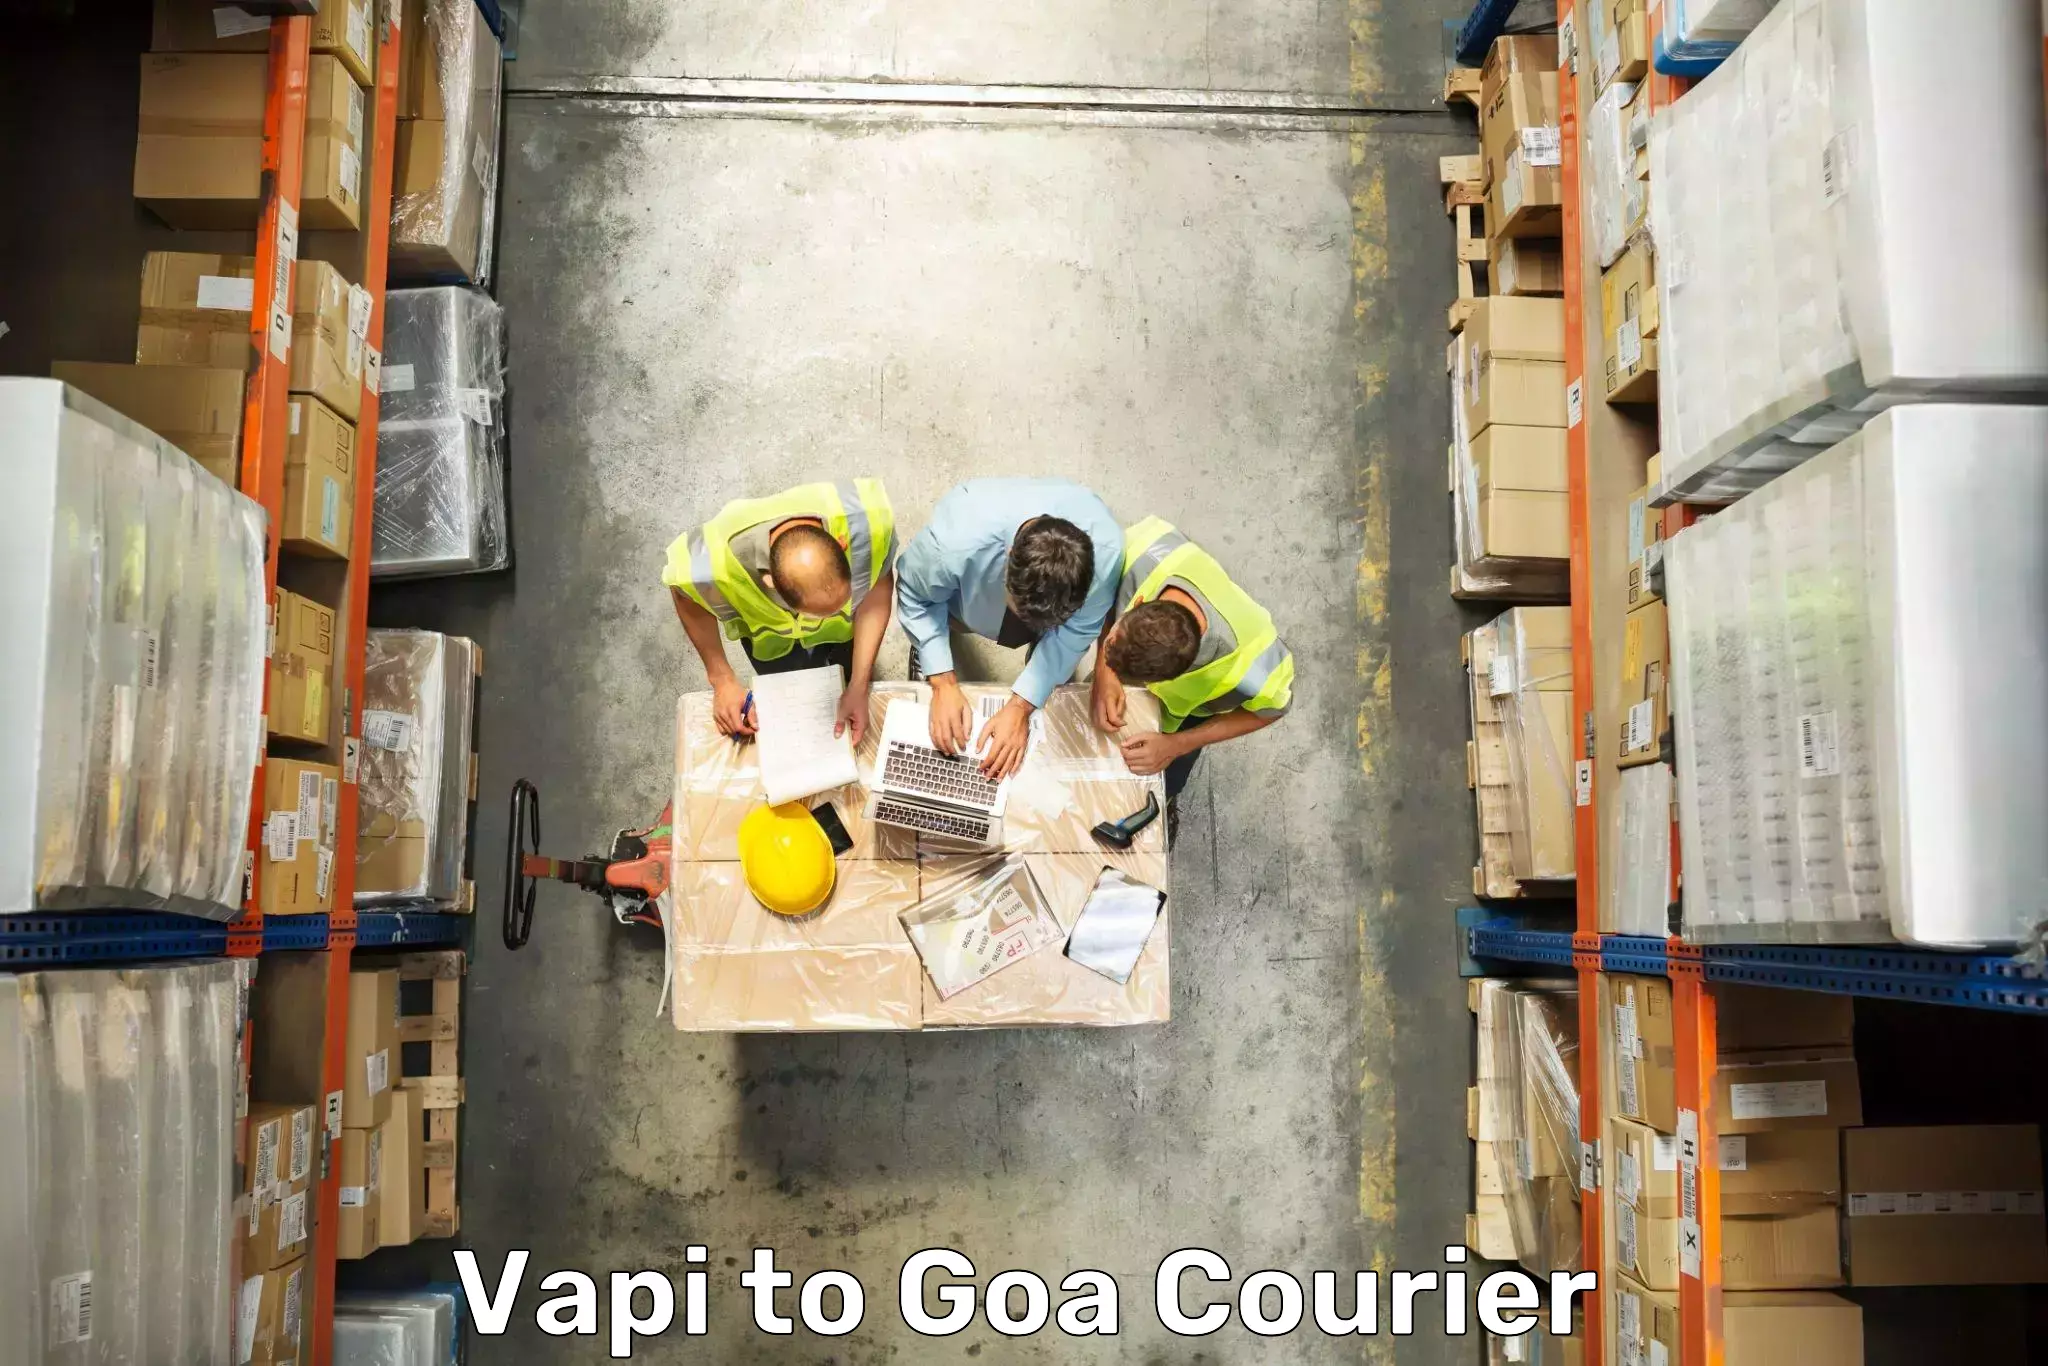 Luggage transport consulting Vapi to IIT Goa